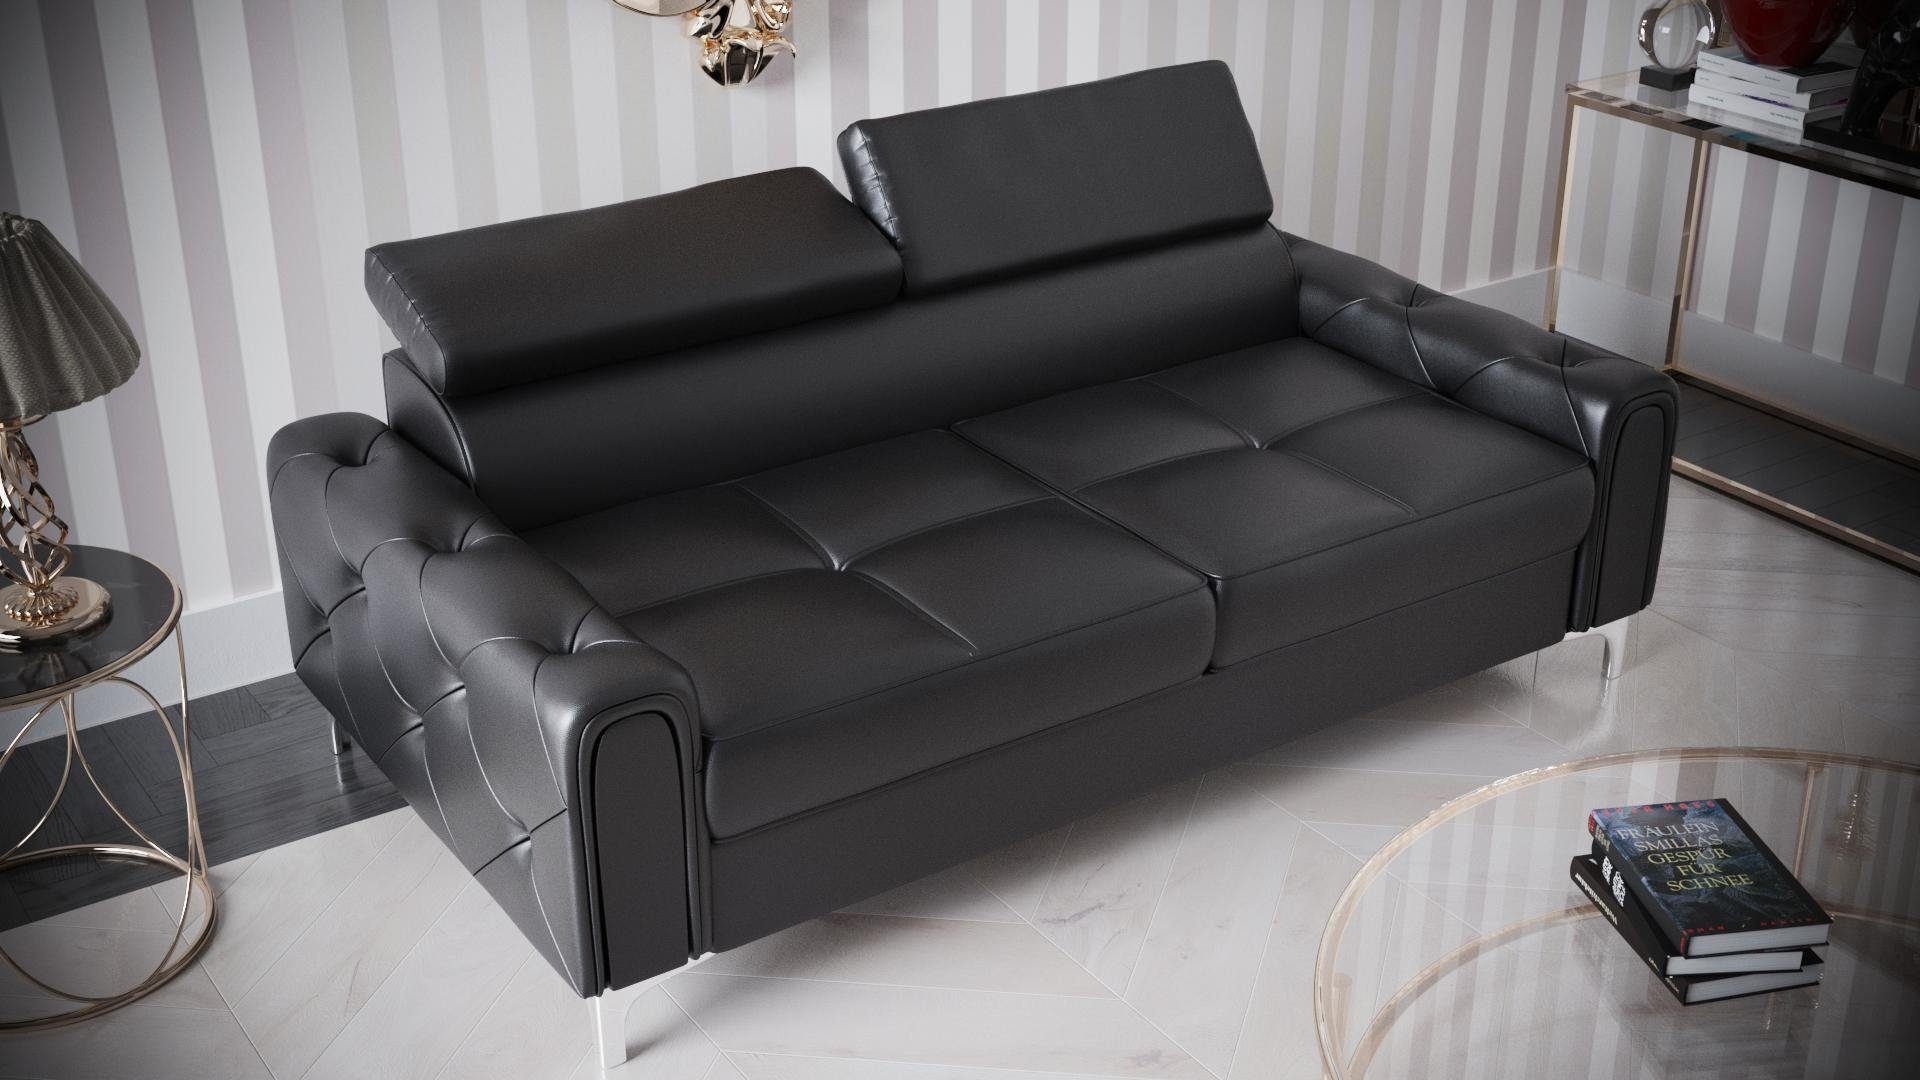 JVmoebel Sofa Designer 2-Sitzer Sofa Couchen Luxus Polster Möbel Sofa Couch Sitz, Made in Europe Schwarz | Schwarz | Schwarz